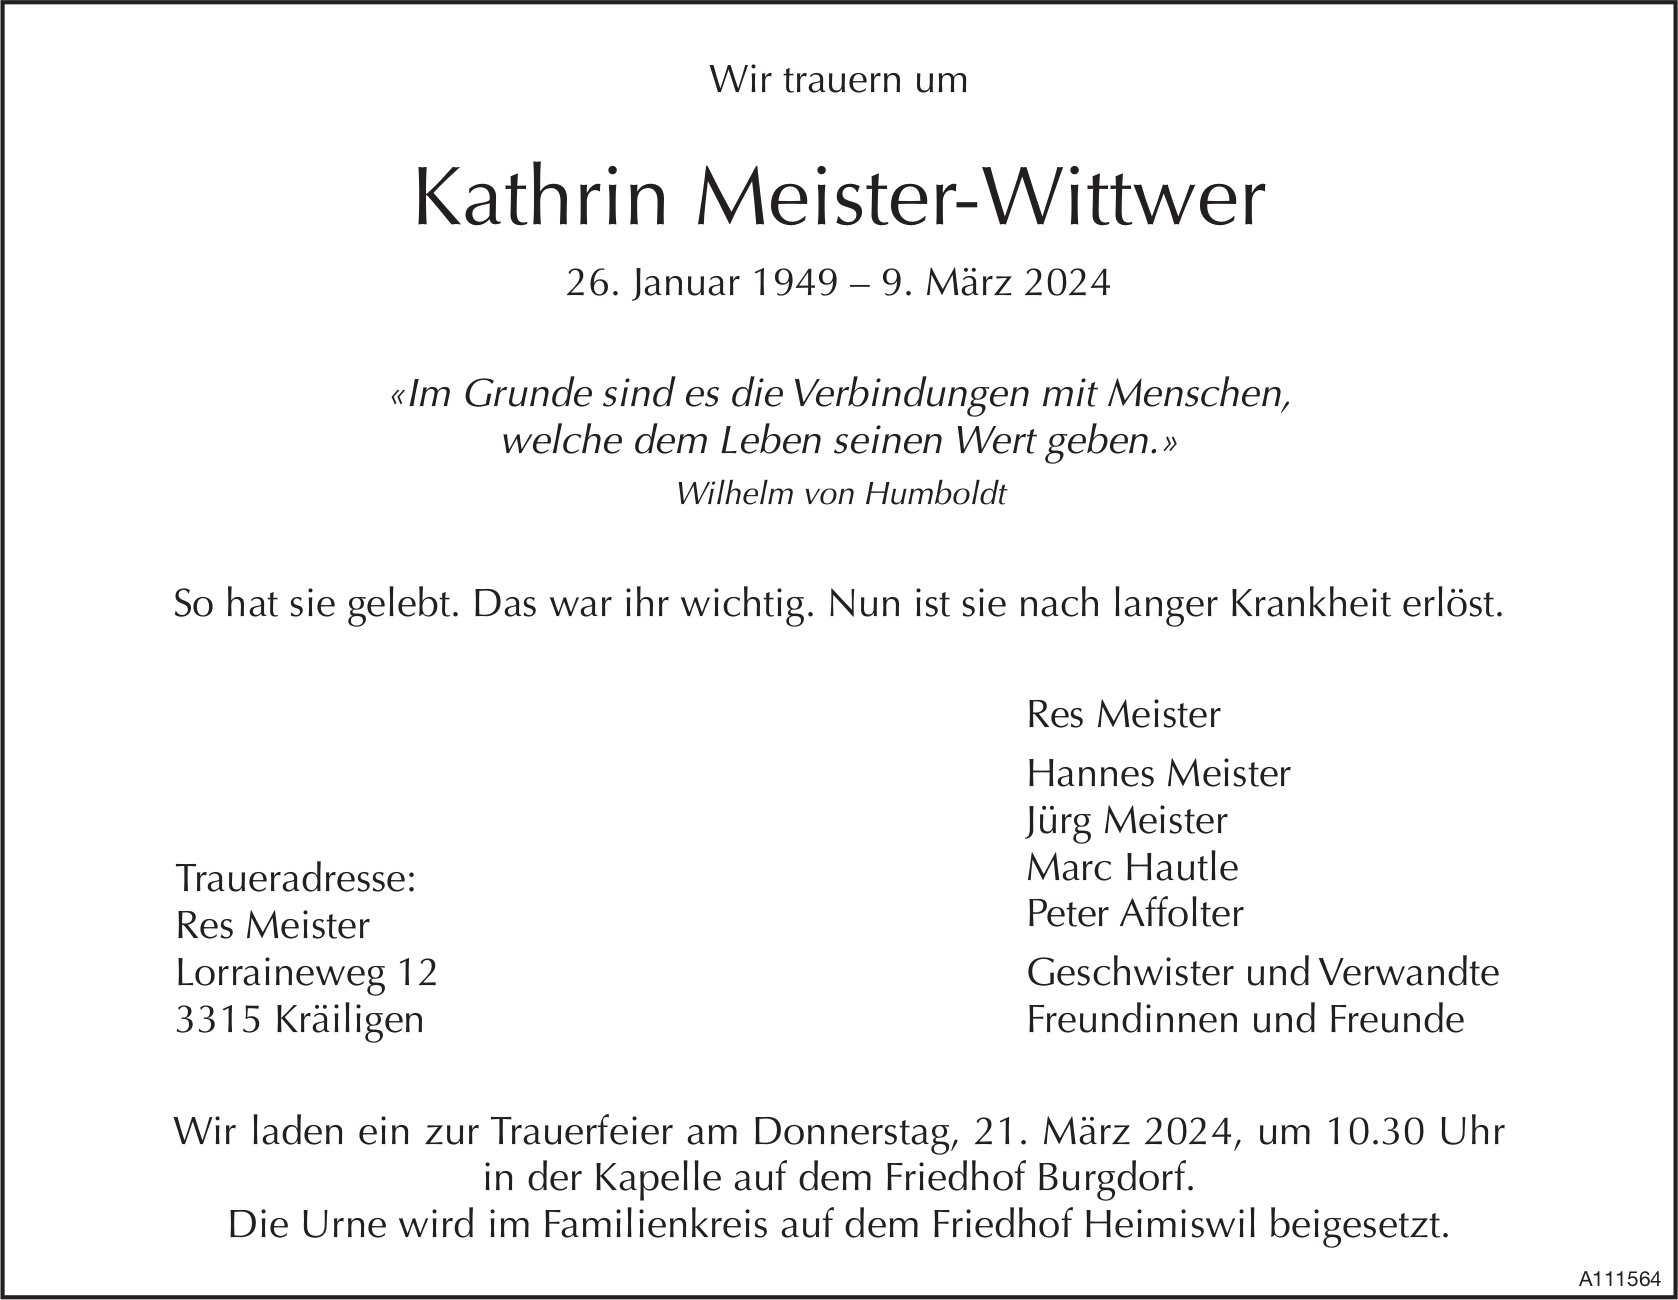 Kathrin Meister-Wittwer, März 2024 / TA